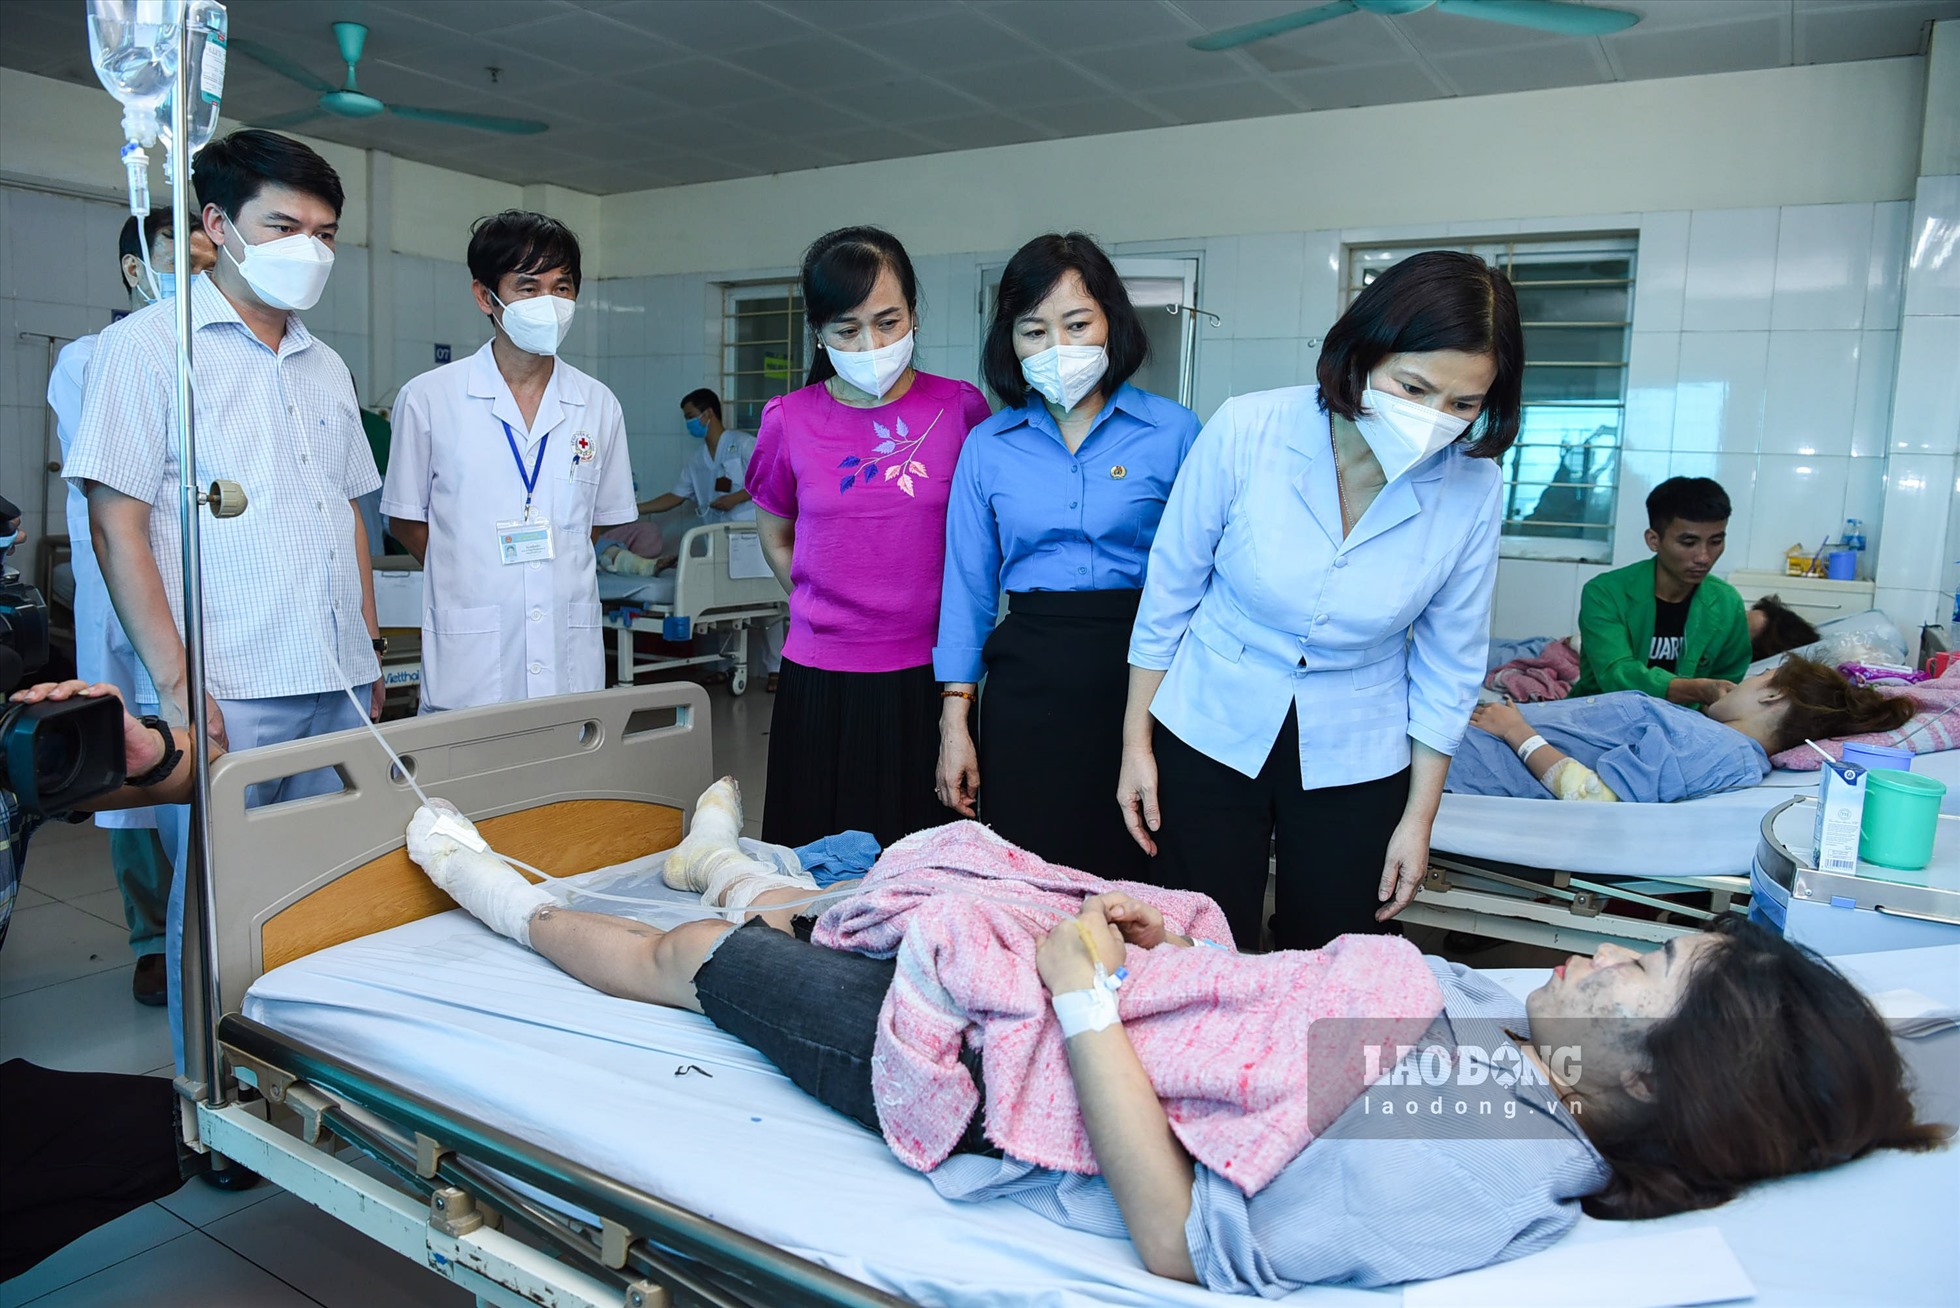 Lãnh đạo UBND tỉnh Bắc Ninh và Liên đoàn lao động tỉnh Bắc Ninh trao hỗ trợ cho công nhân bị thương sau vụ nổ. Ảnh: Trần Tuấn.